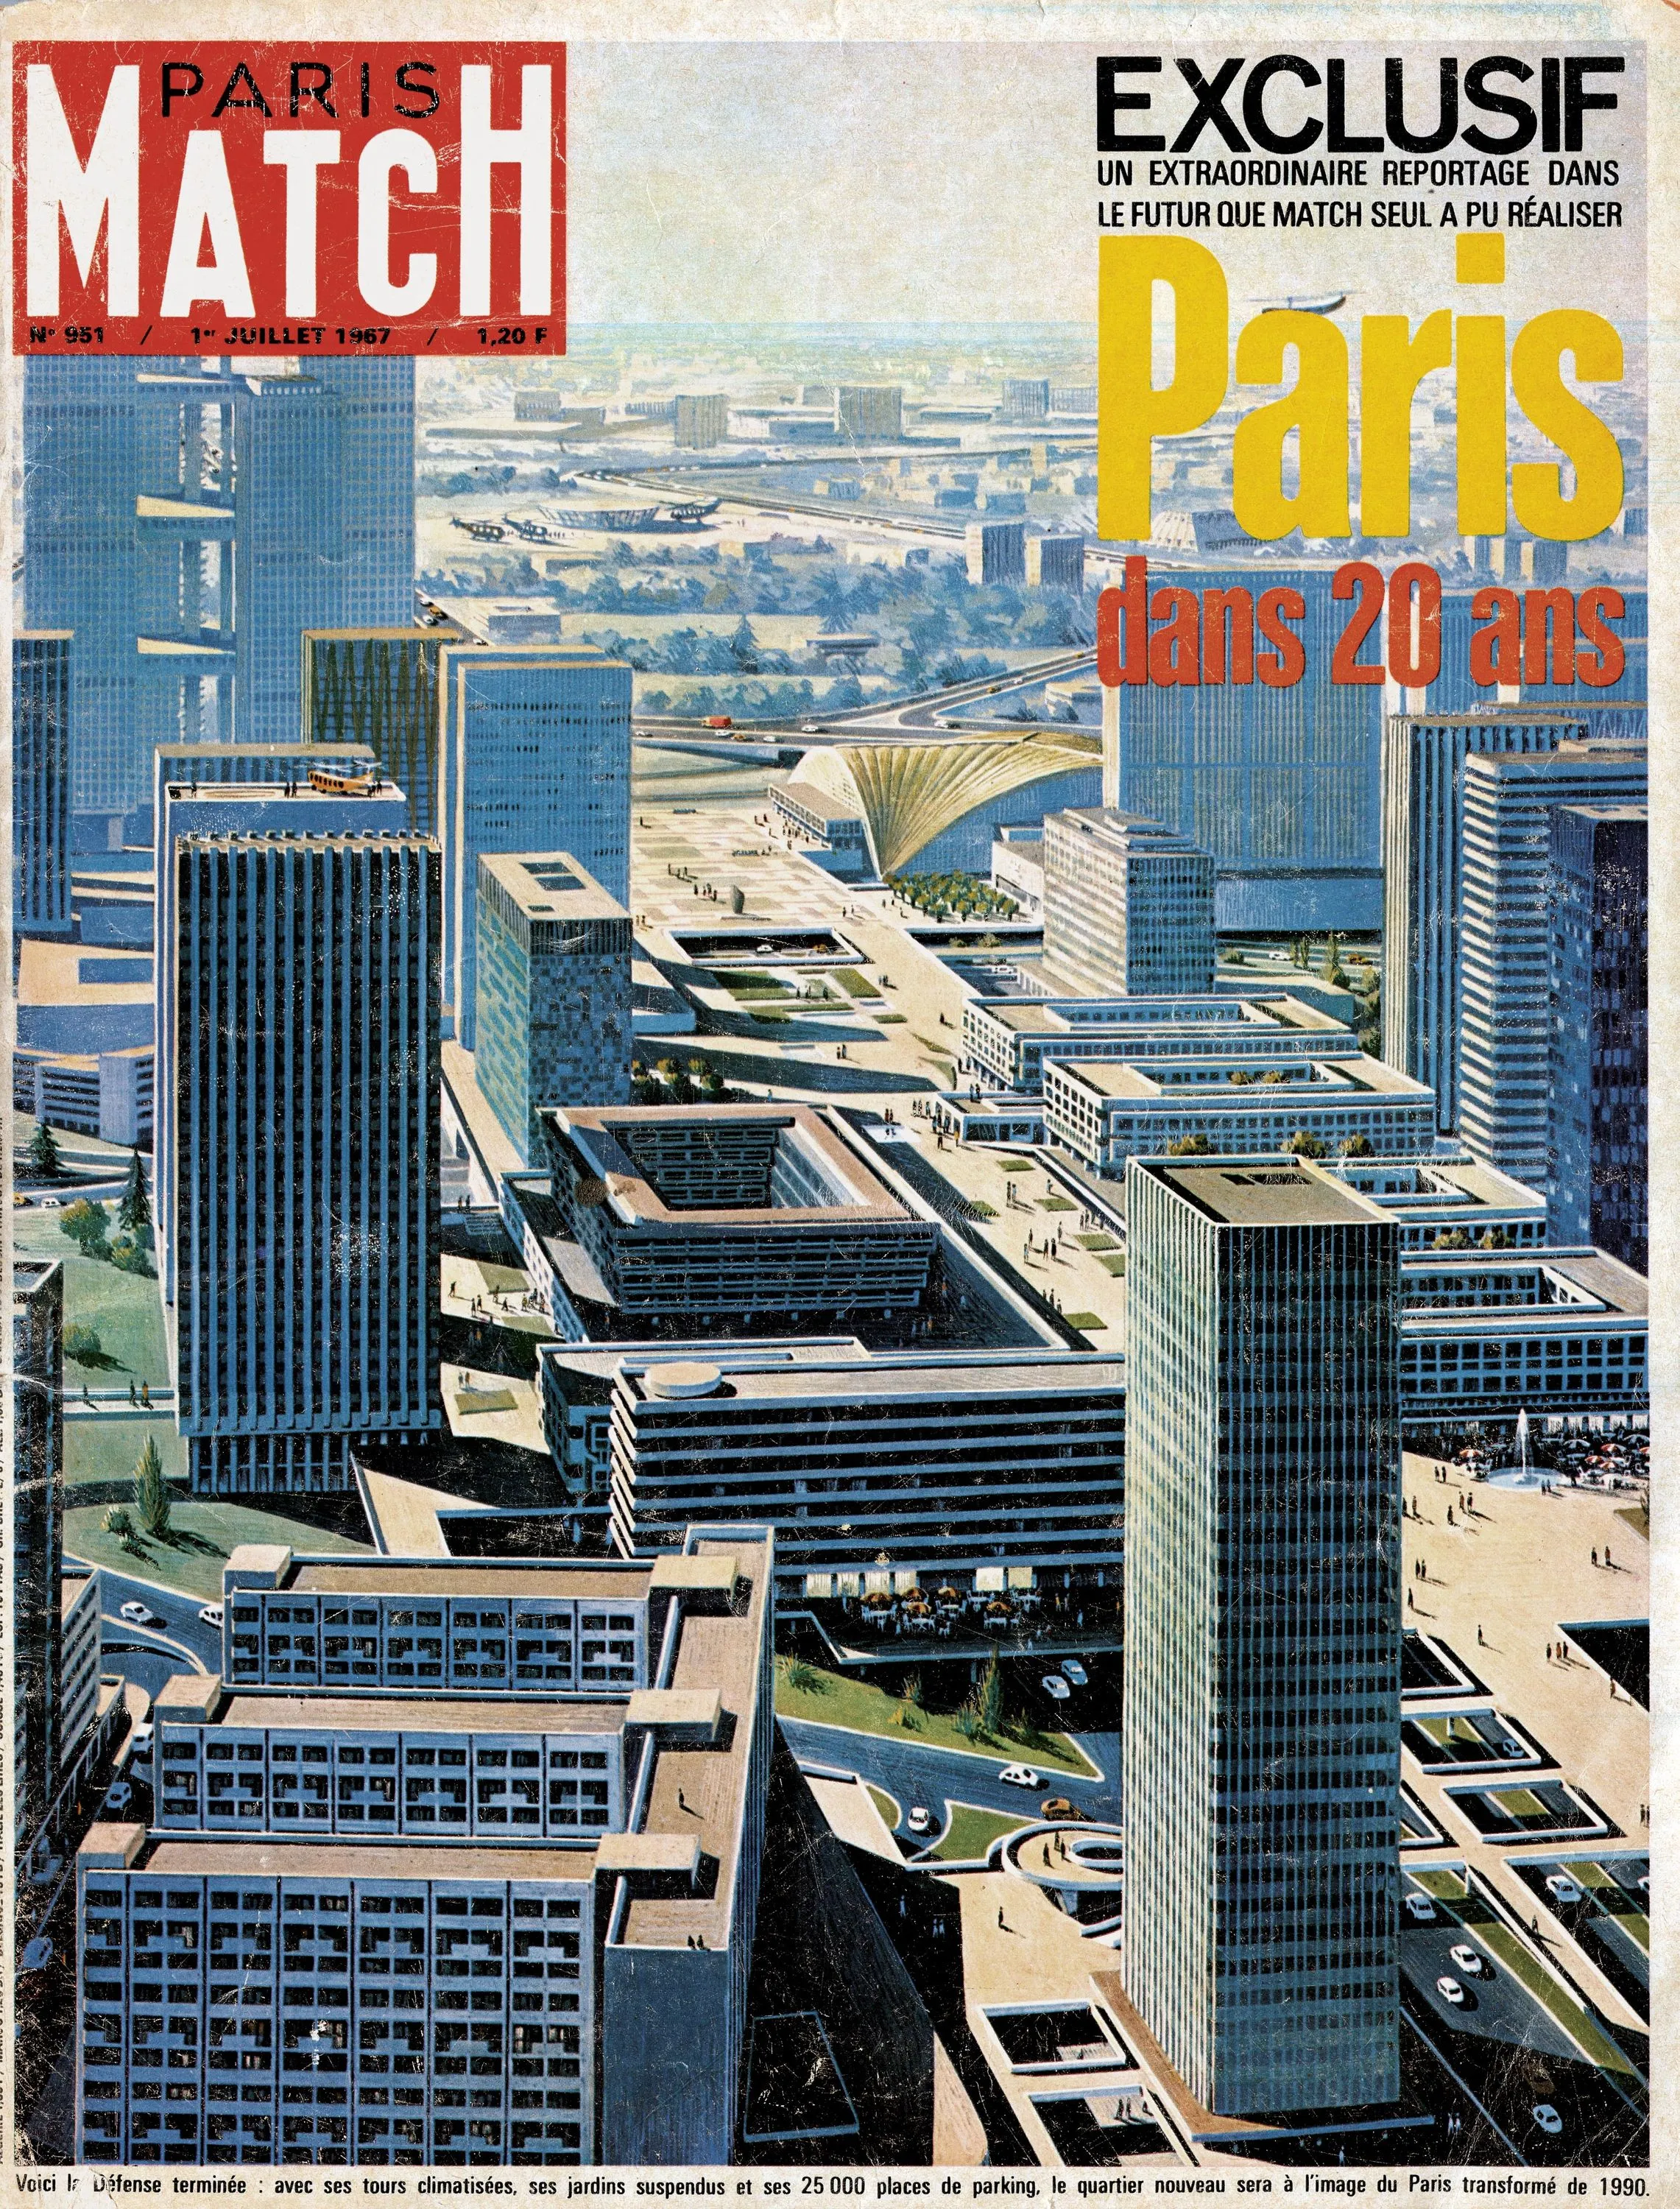 Une. « La Défense. Paris dans 20 ans », Paris Match, 1967.